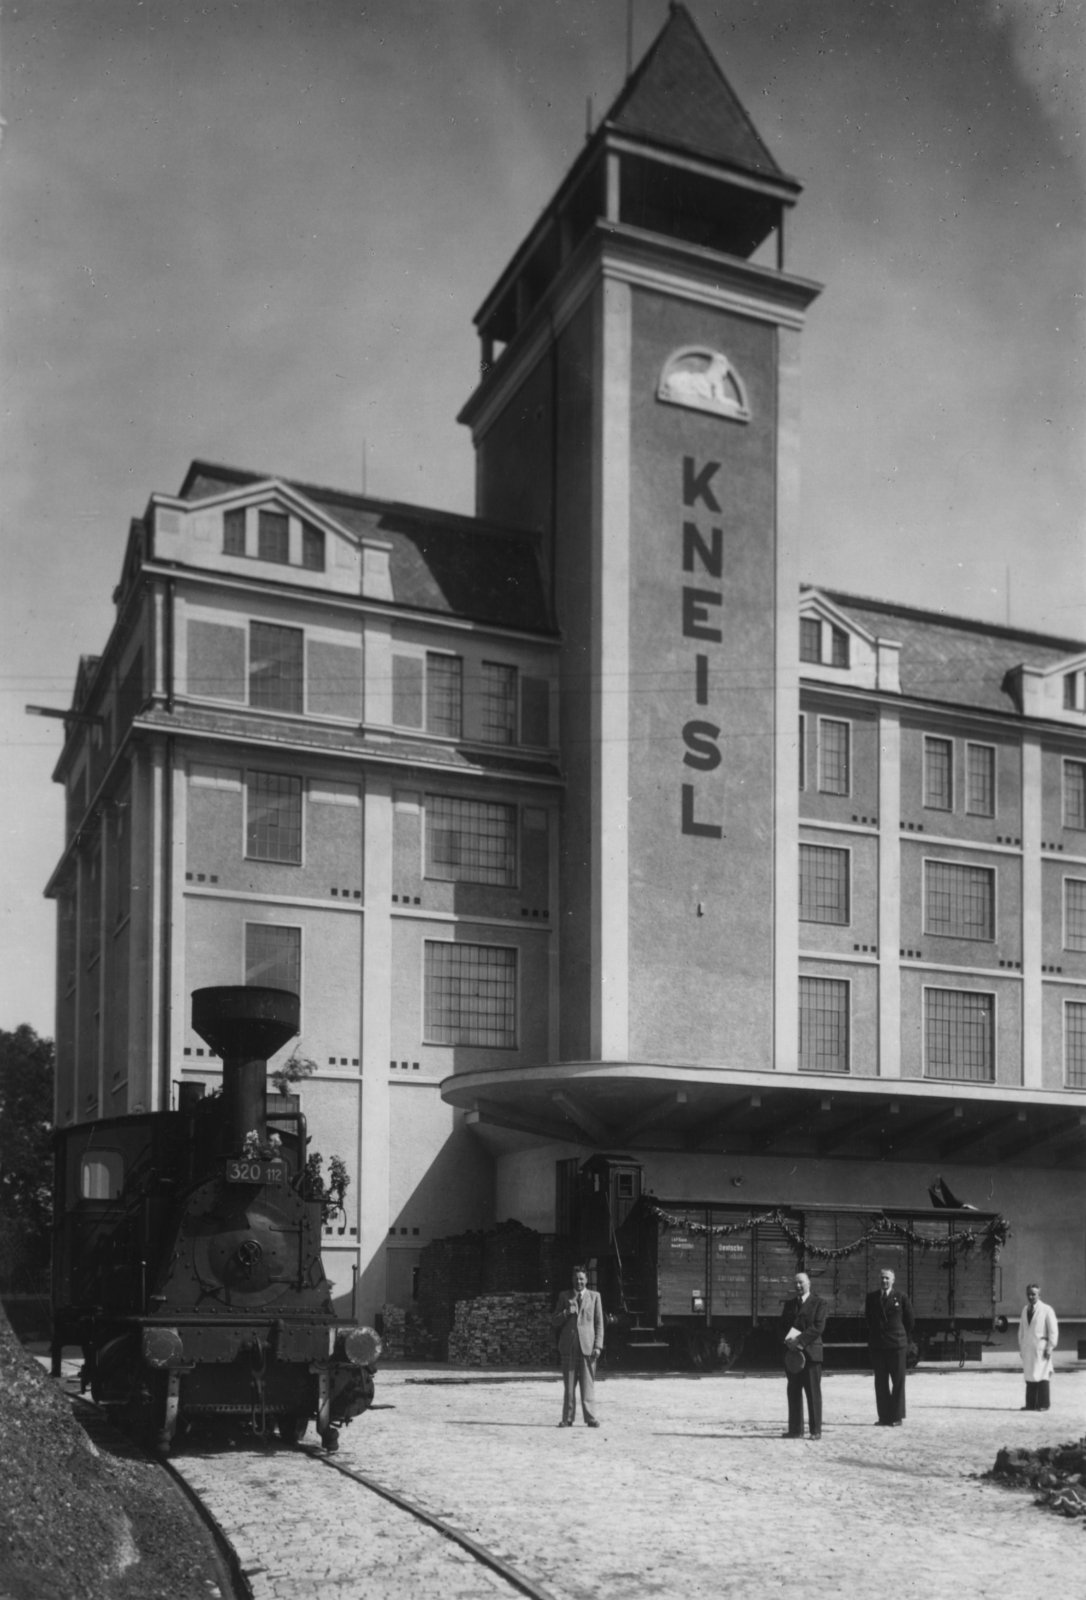 Závod Sfinx byl založen Philippem Kneislem v roce 1863 v Holešově. Z počátku se jednalo o malou fabriku na výrobu tvrdých kandytů, avšak jak šel čas a fabrika zvětšovala objemy výroby, bylo nutné ji přemístit do větších prostor. Po 53 letech od svého založení se tak výroba přesunula do Všetul, kde továrna sídlí do dnes.